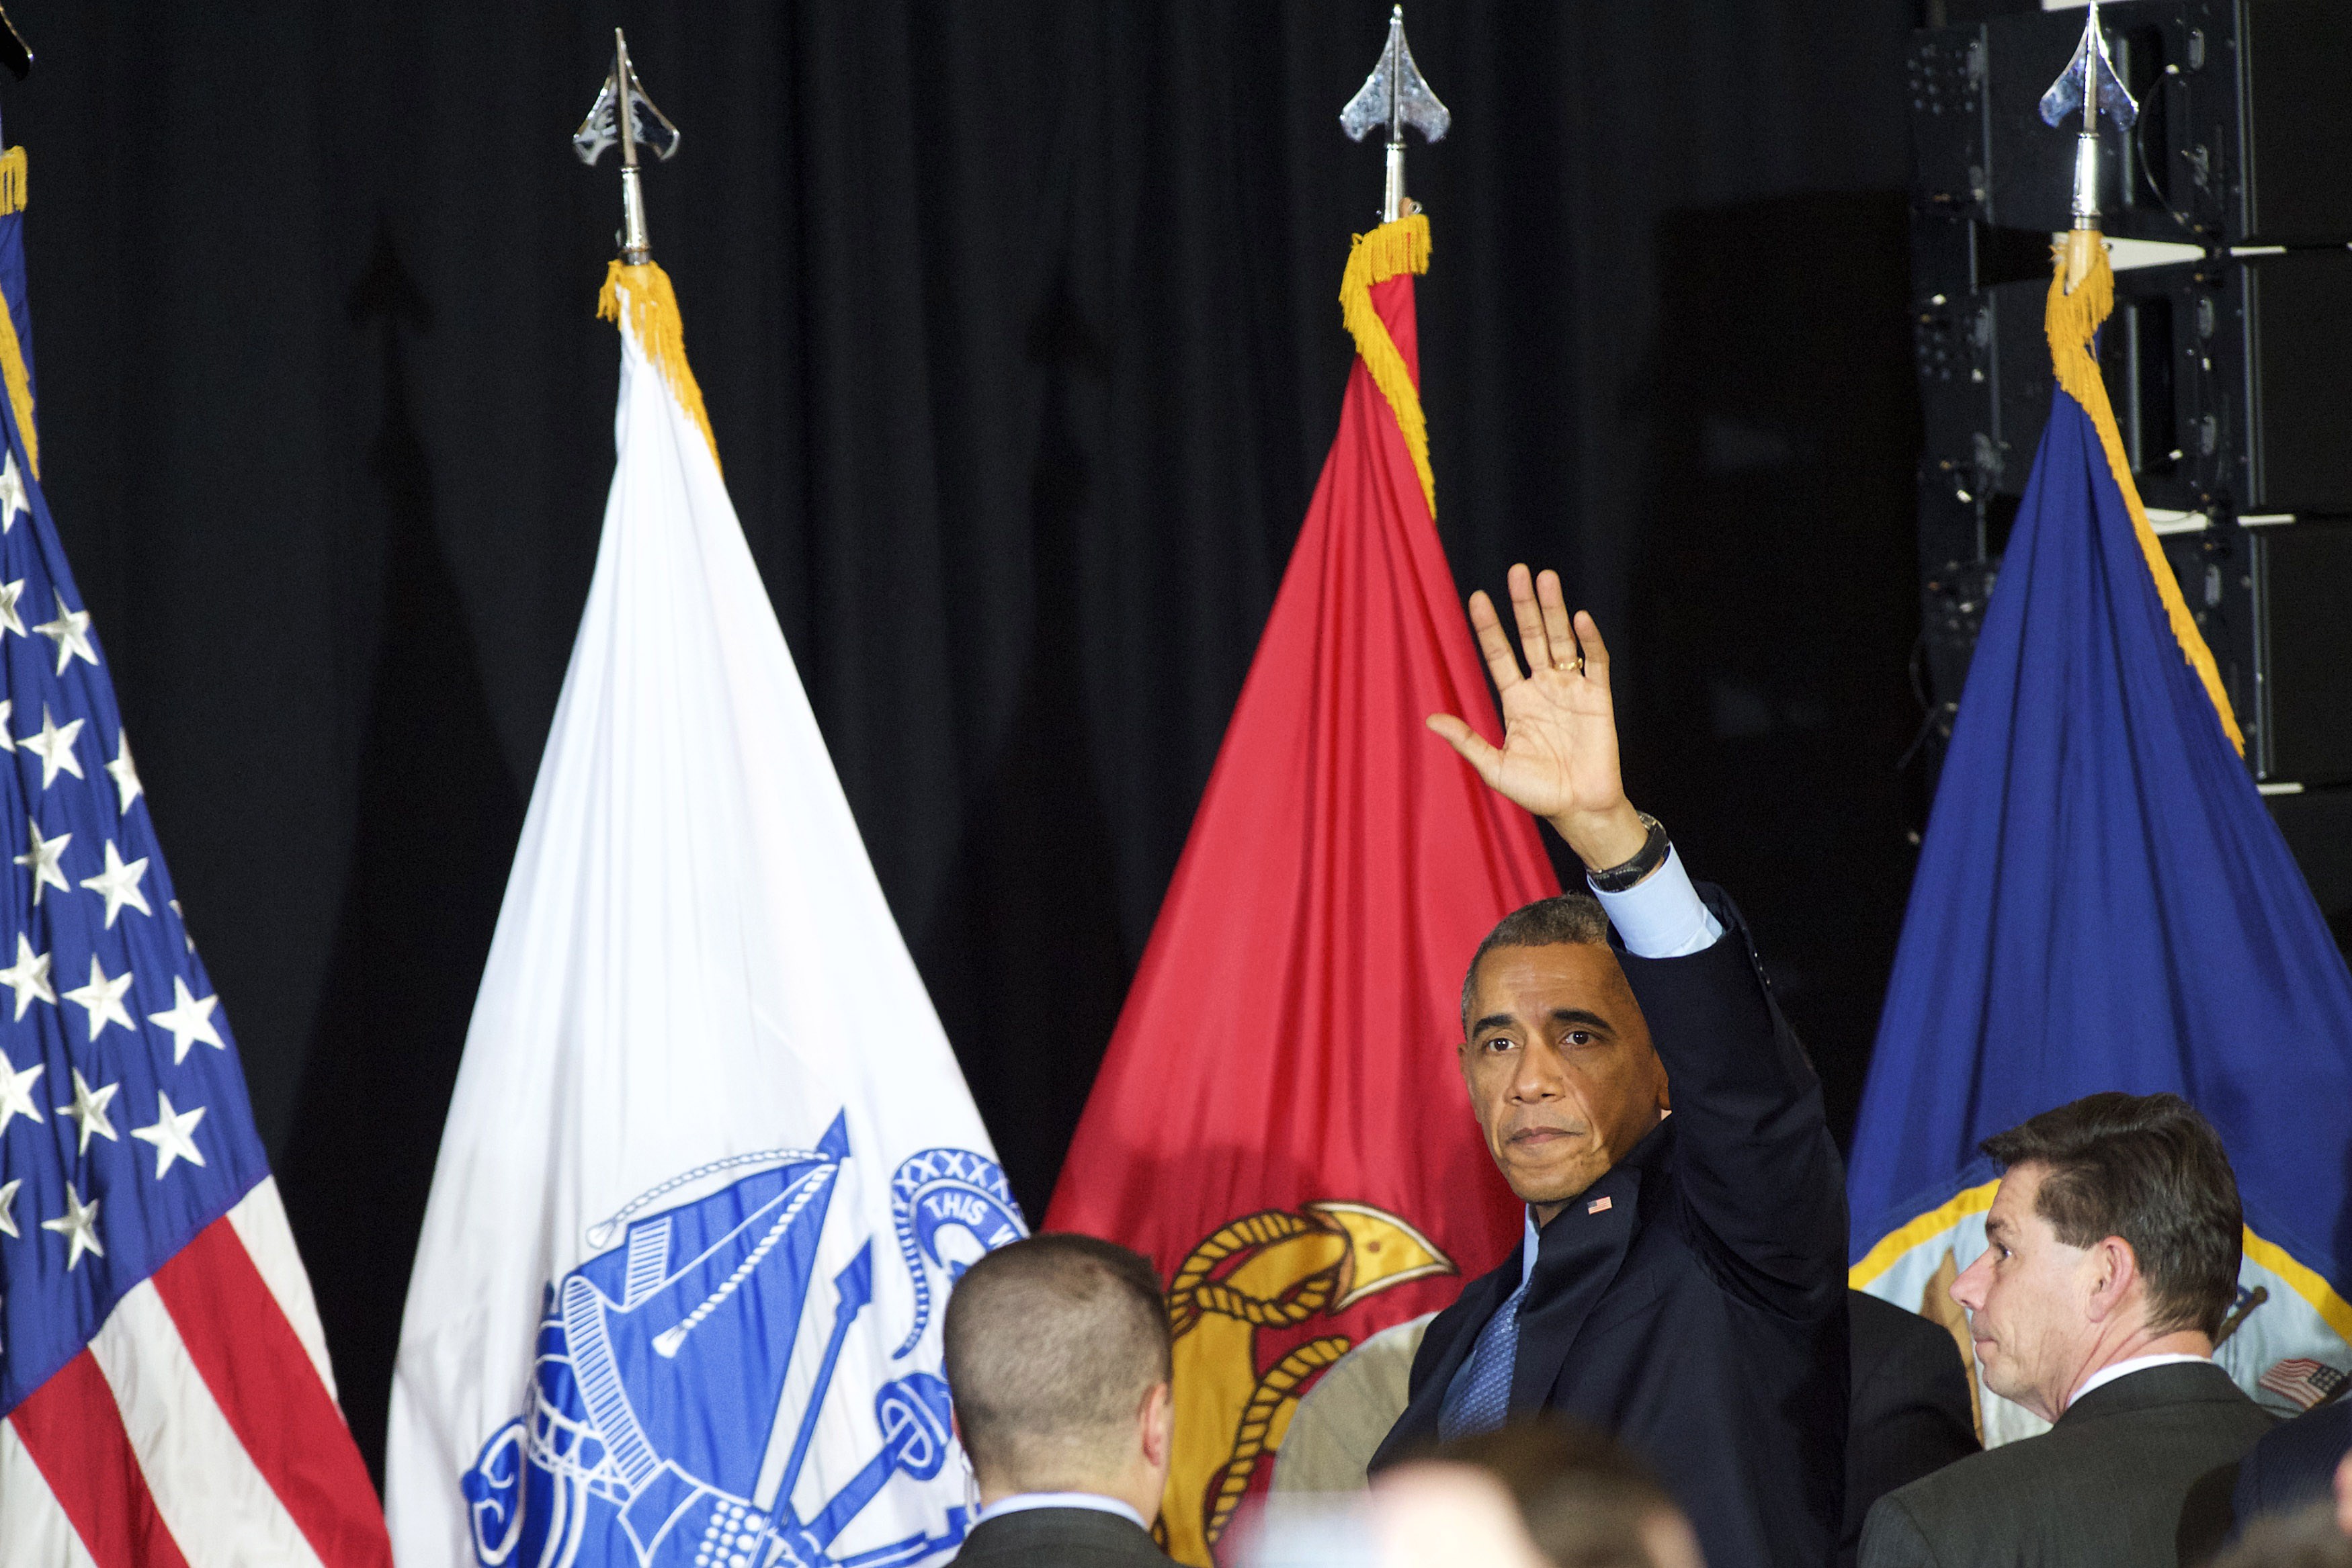 Časy velkých operací v zahraničí končí, říká Obama